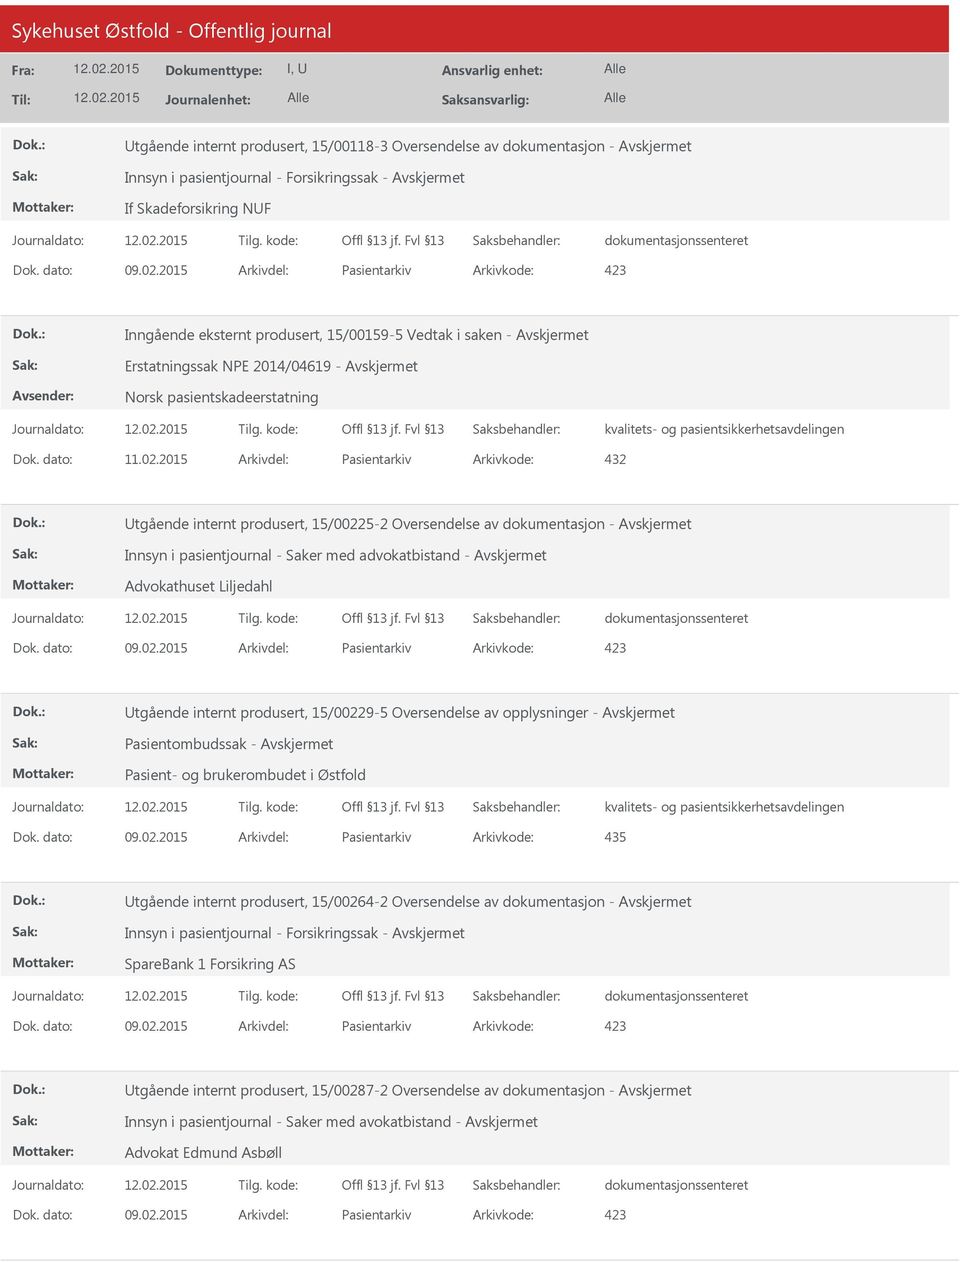 2015 Arkivdel: Pasientarkiv Arkivkode: 432 tgående internt produsert, 15/00225-2 Oversendelse av dokumentasjon - Innsyn i pasientjournal - Saker med advokatbistand - Advokathuset Liljedahl